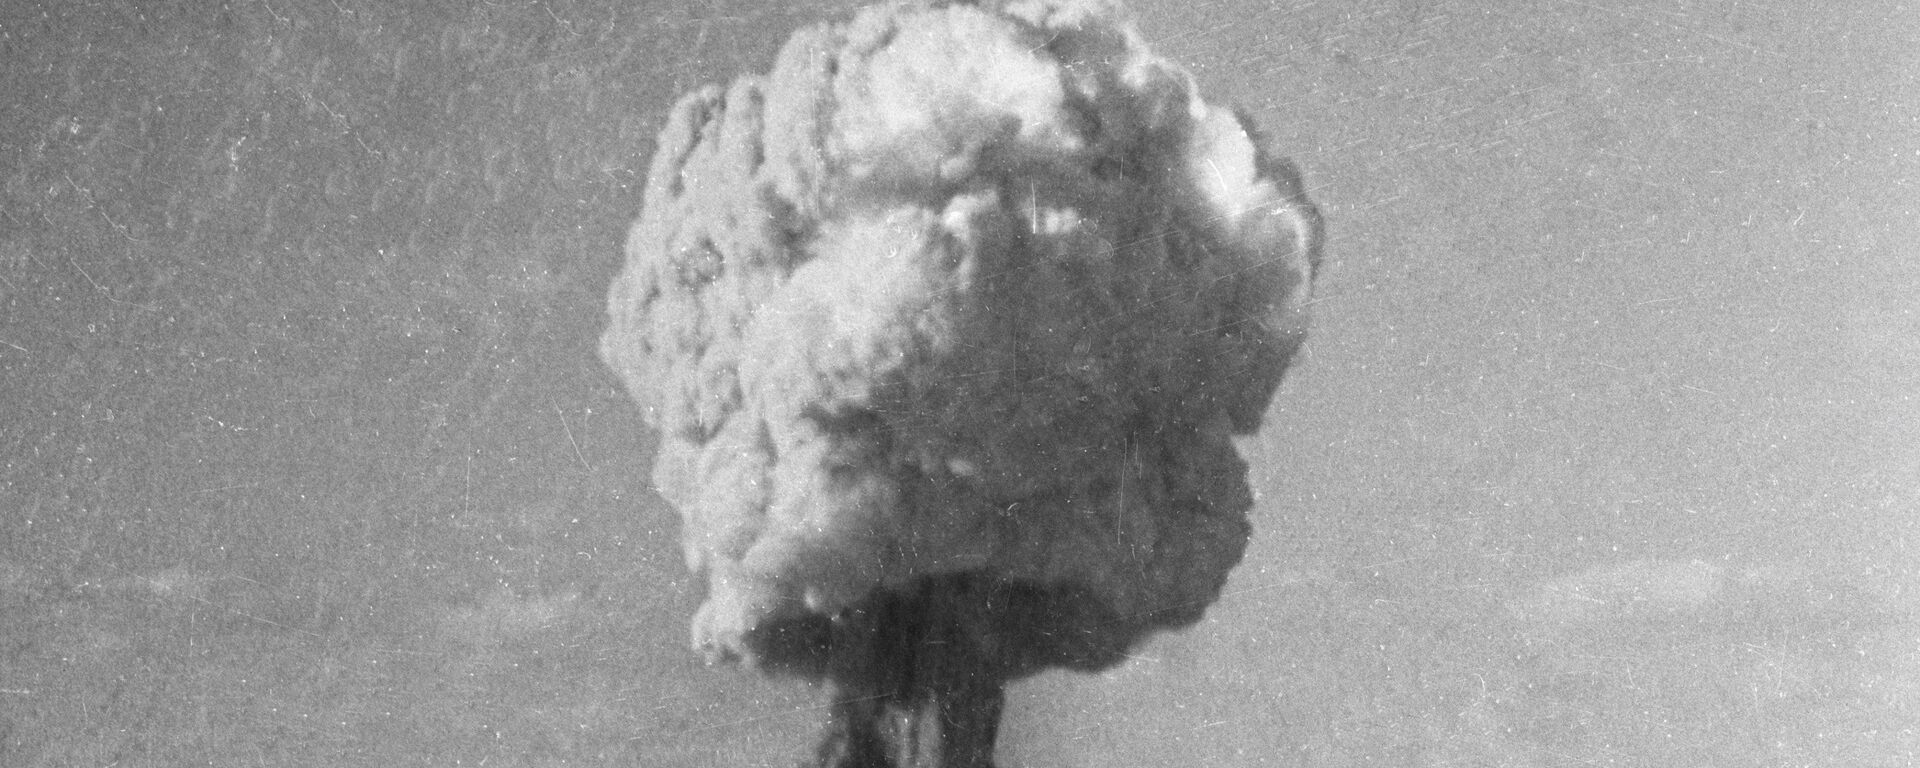 Атомный взрыв, архивное фото  - Sputnik Казахстан, 1920, 10.03.2021